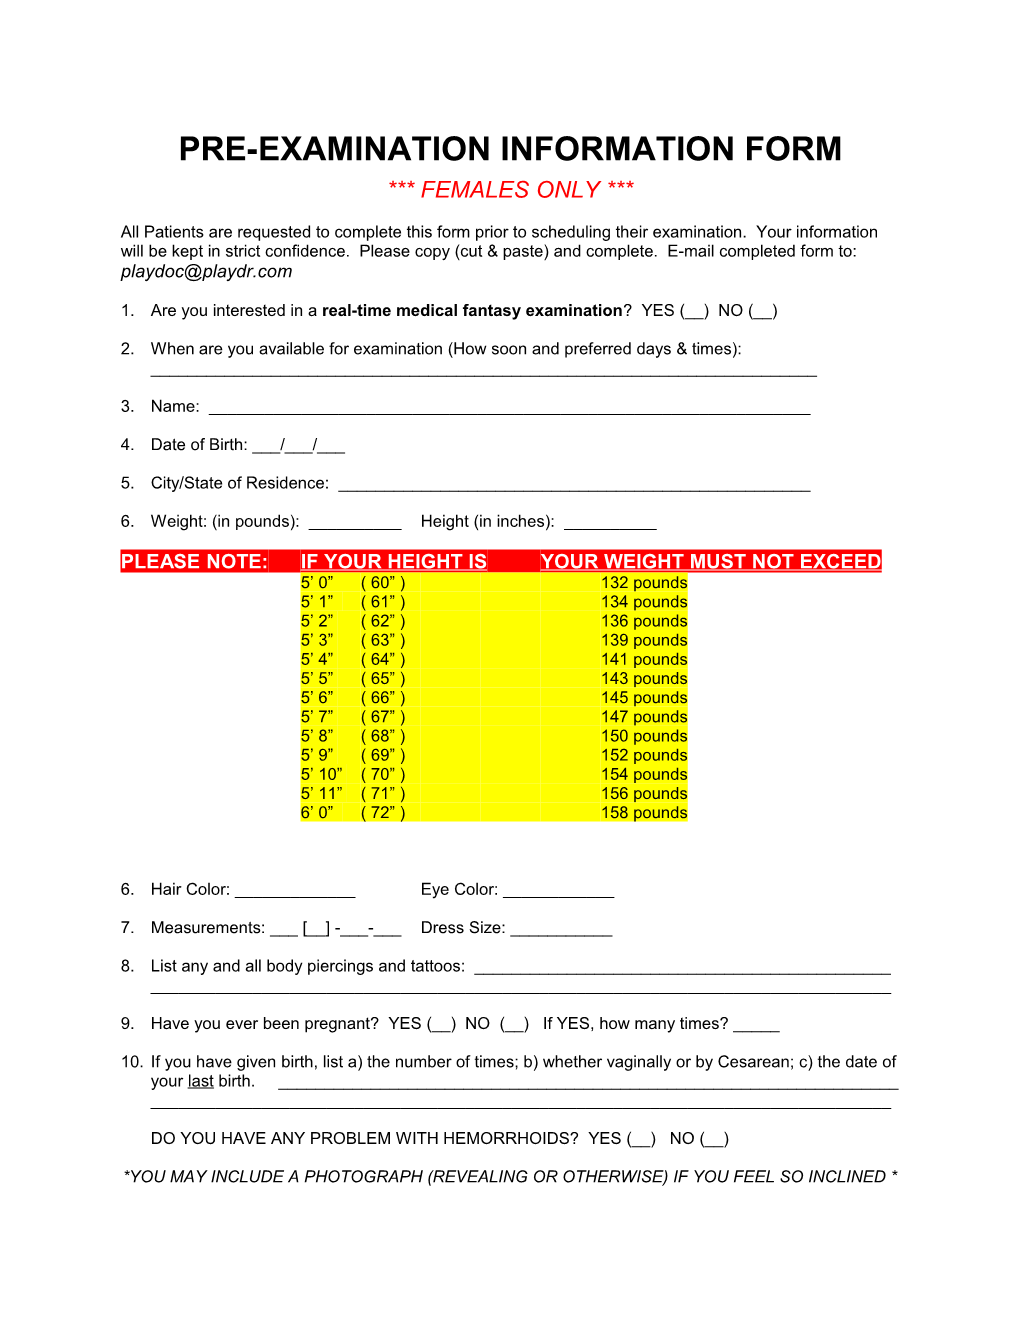 Pre-Examination Information Form